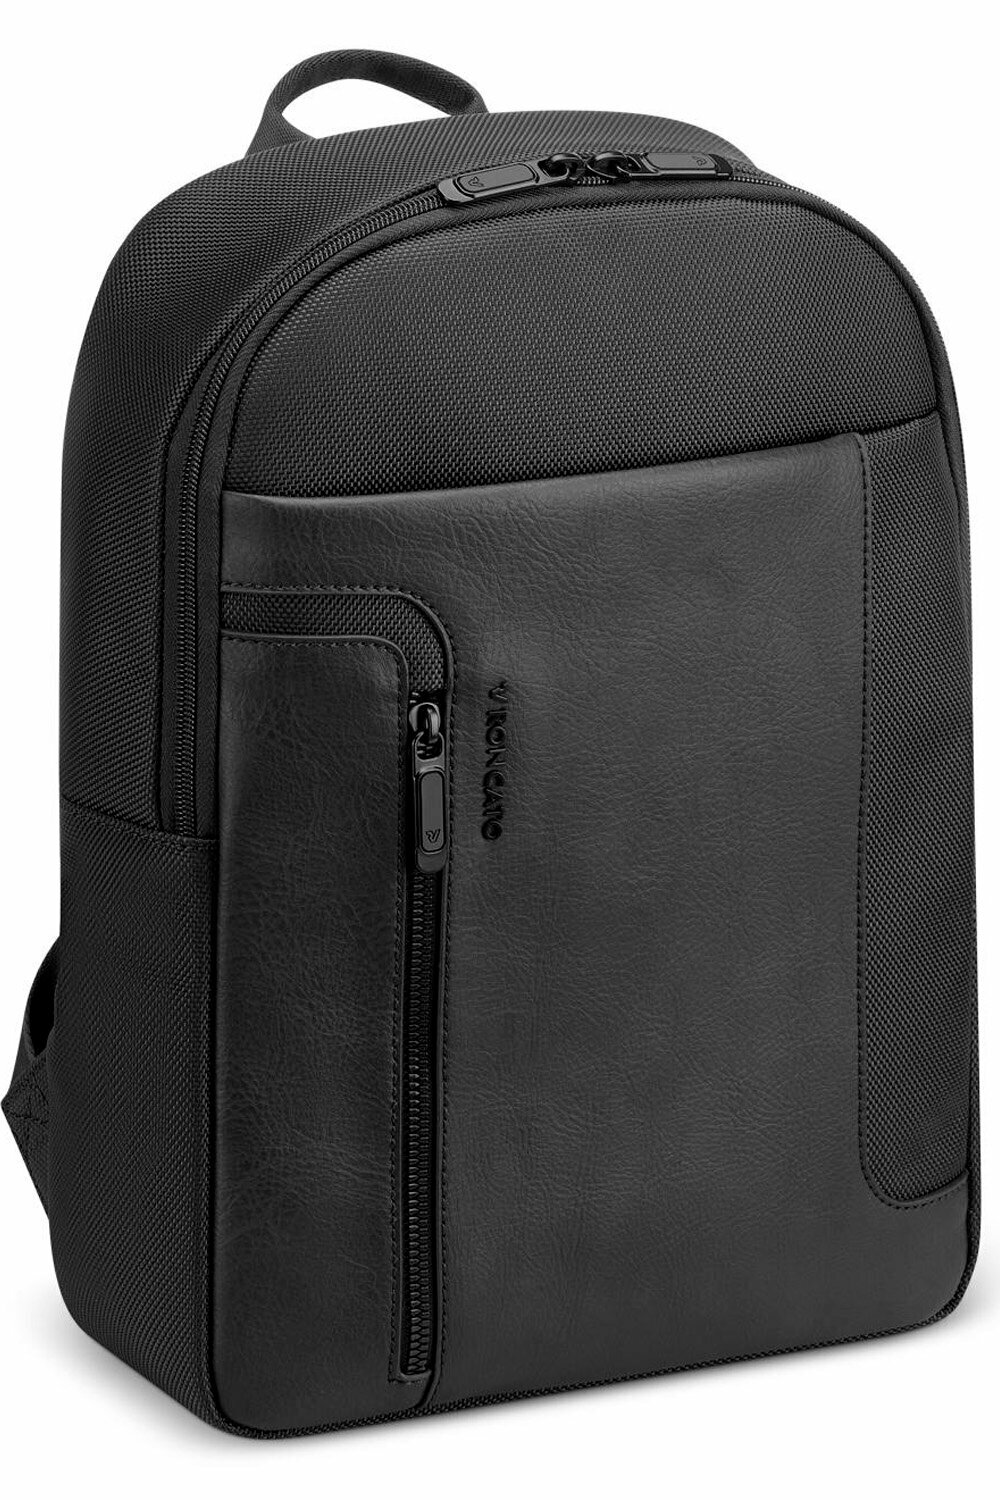 Рюкзак Roncato 400901 Panama Travel Backpack *01 Black